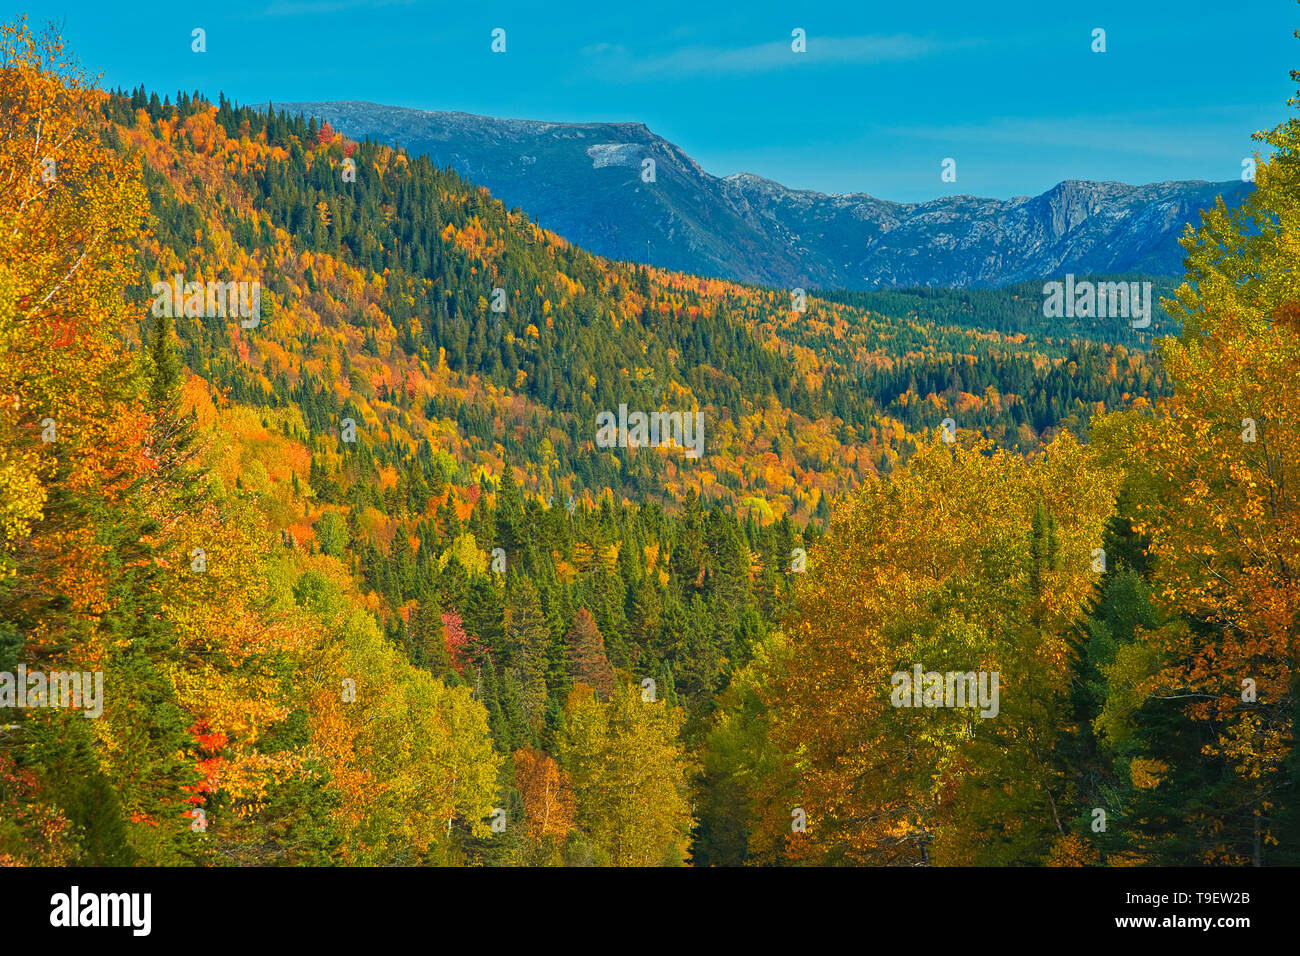 Couleurs d'automne dans les monts Chic-Choc, une chaîne de montagnes qui s'inscrit dans les monts Notre-Dame, qui est une continuation de la chaîne des Appalaches. Il s'agit d'un parc provincial, pas un vrai parc fédéral. Le parc national de la Gaspésie Québec Canada Banque D'Images